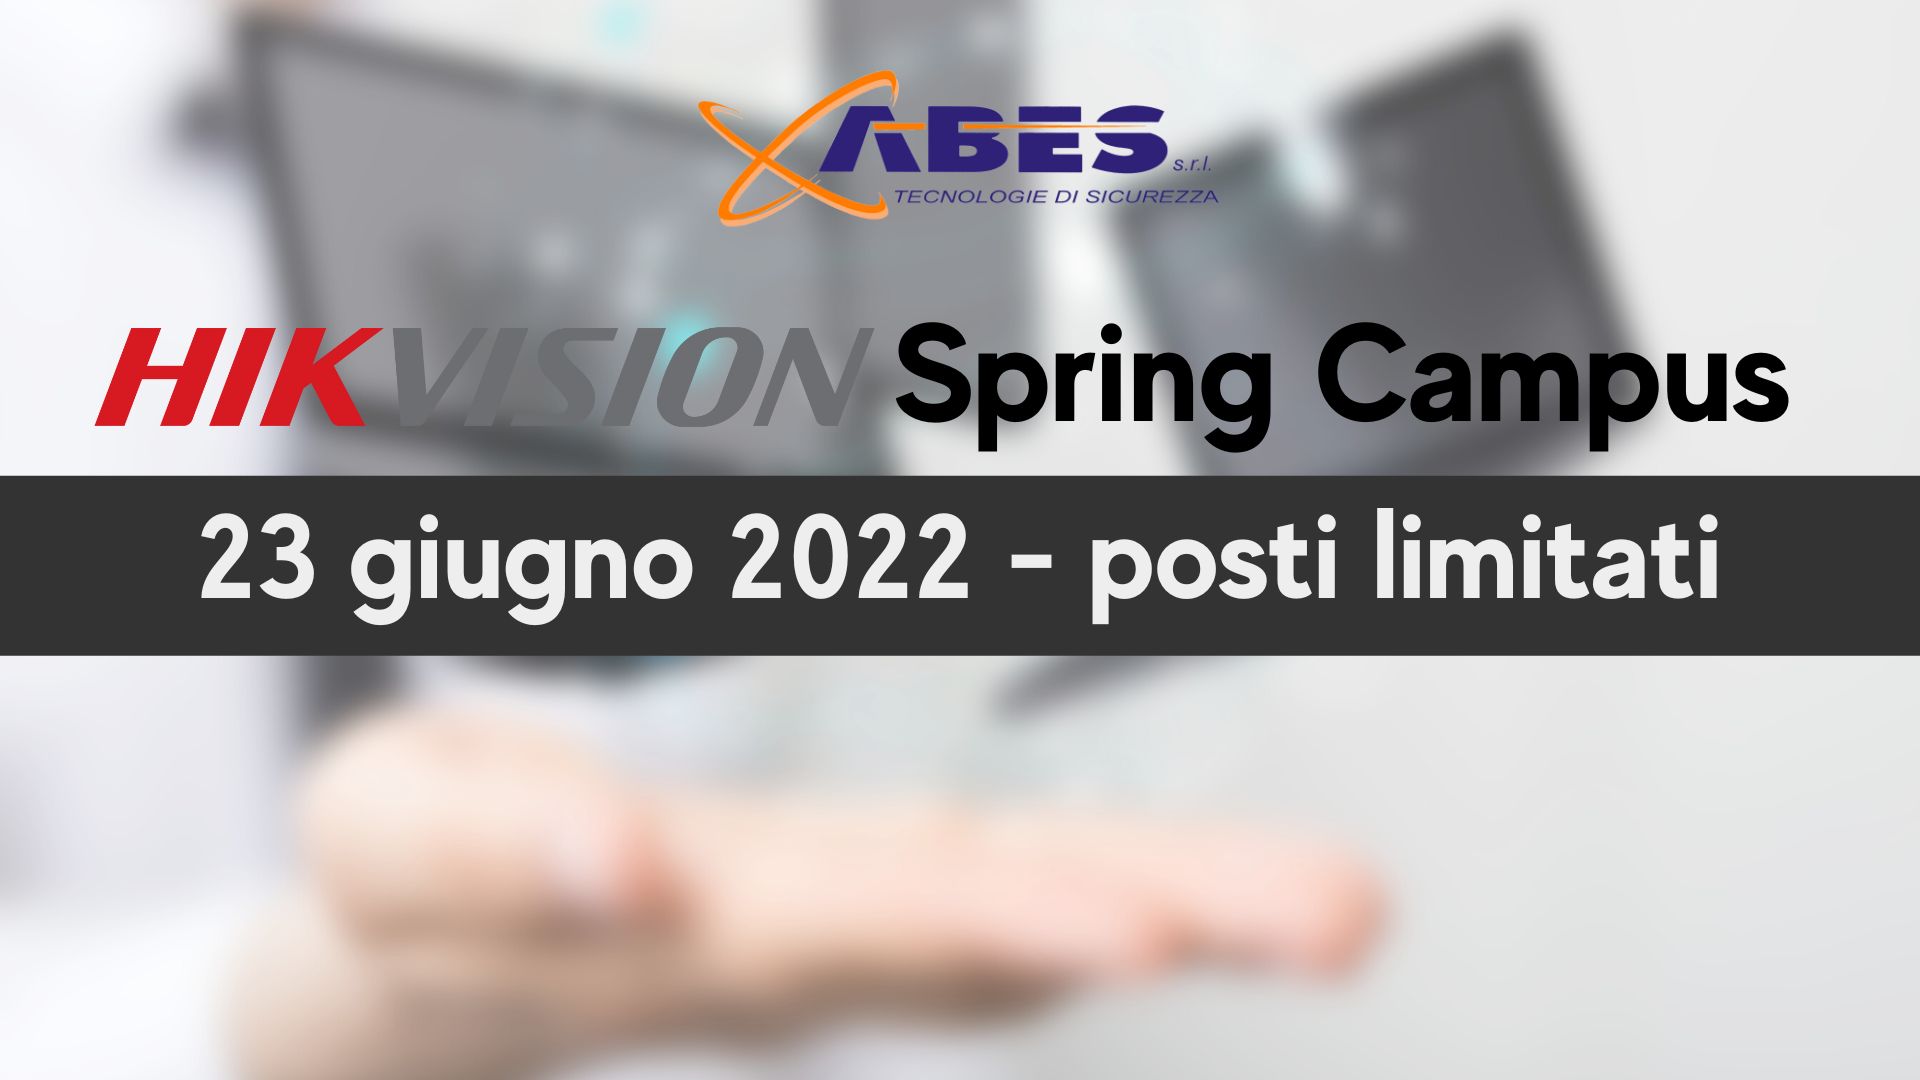 ABES Hikvision Spring Campus 23 giugno 2022